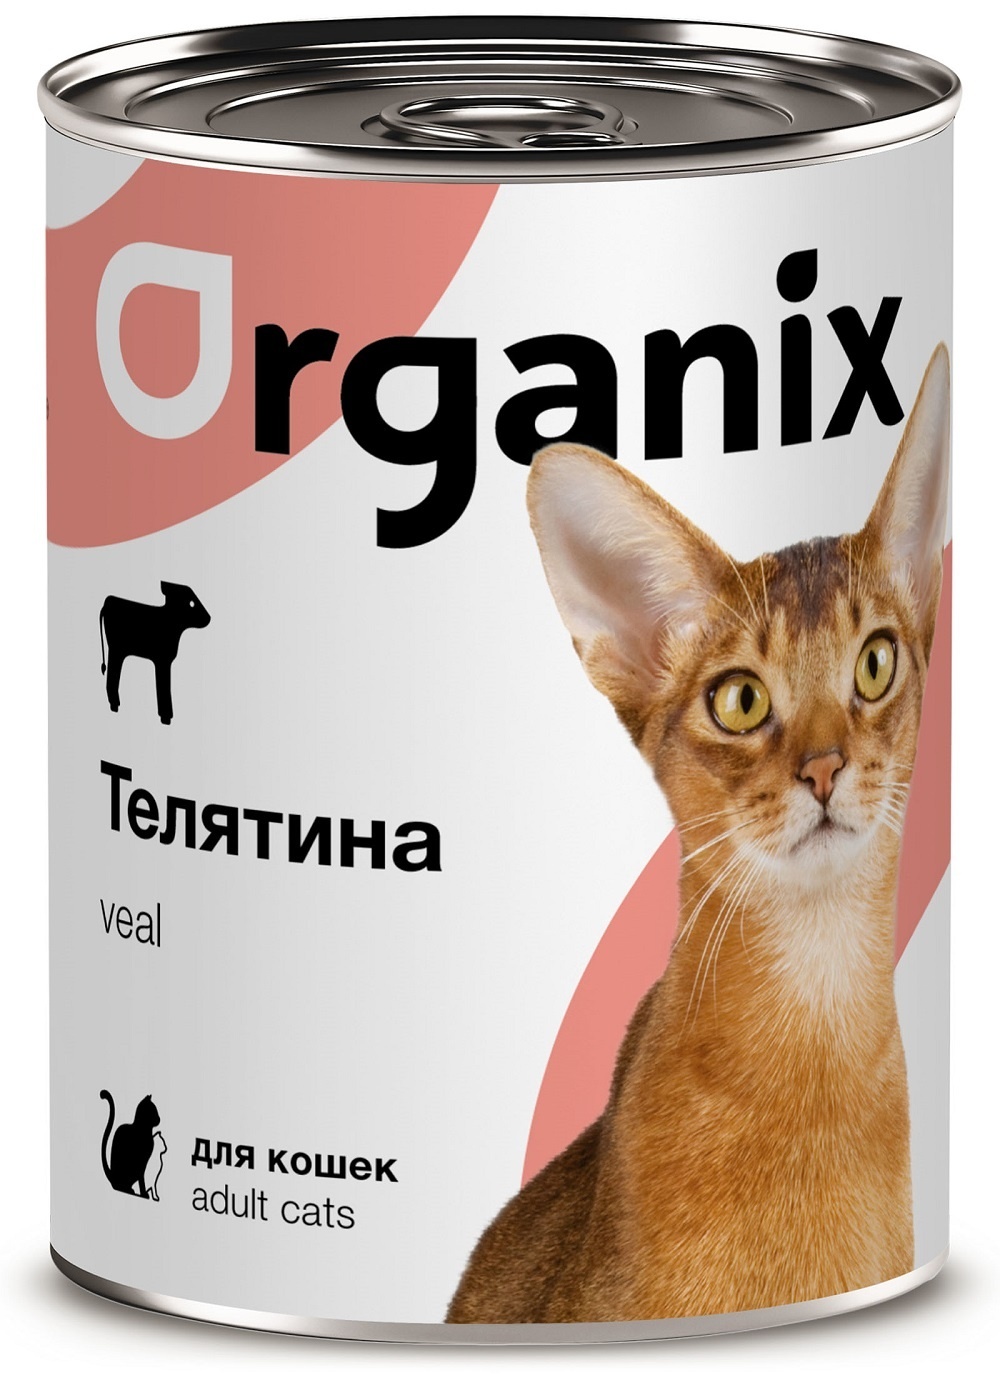 Organix консервы Organix консервы с телятиной для кошек (410 г) organix консервы organix консервы с индейкой для взрослых собак банка 410 г